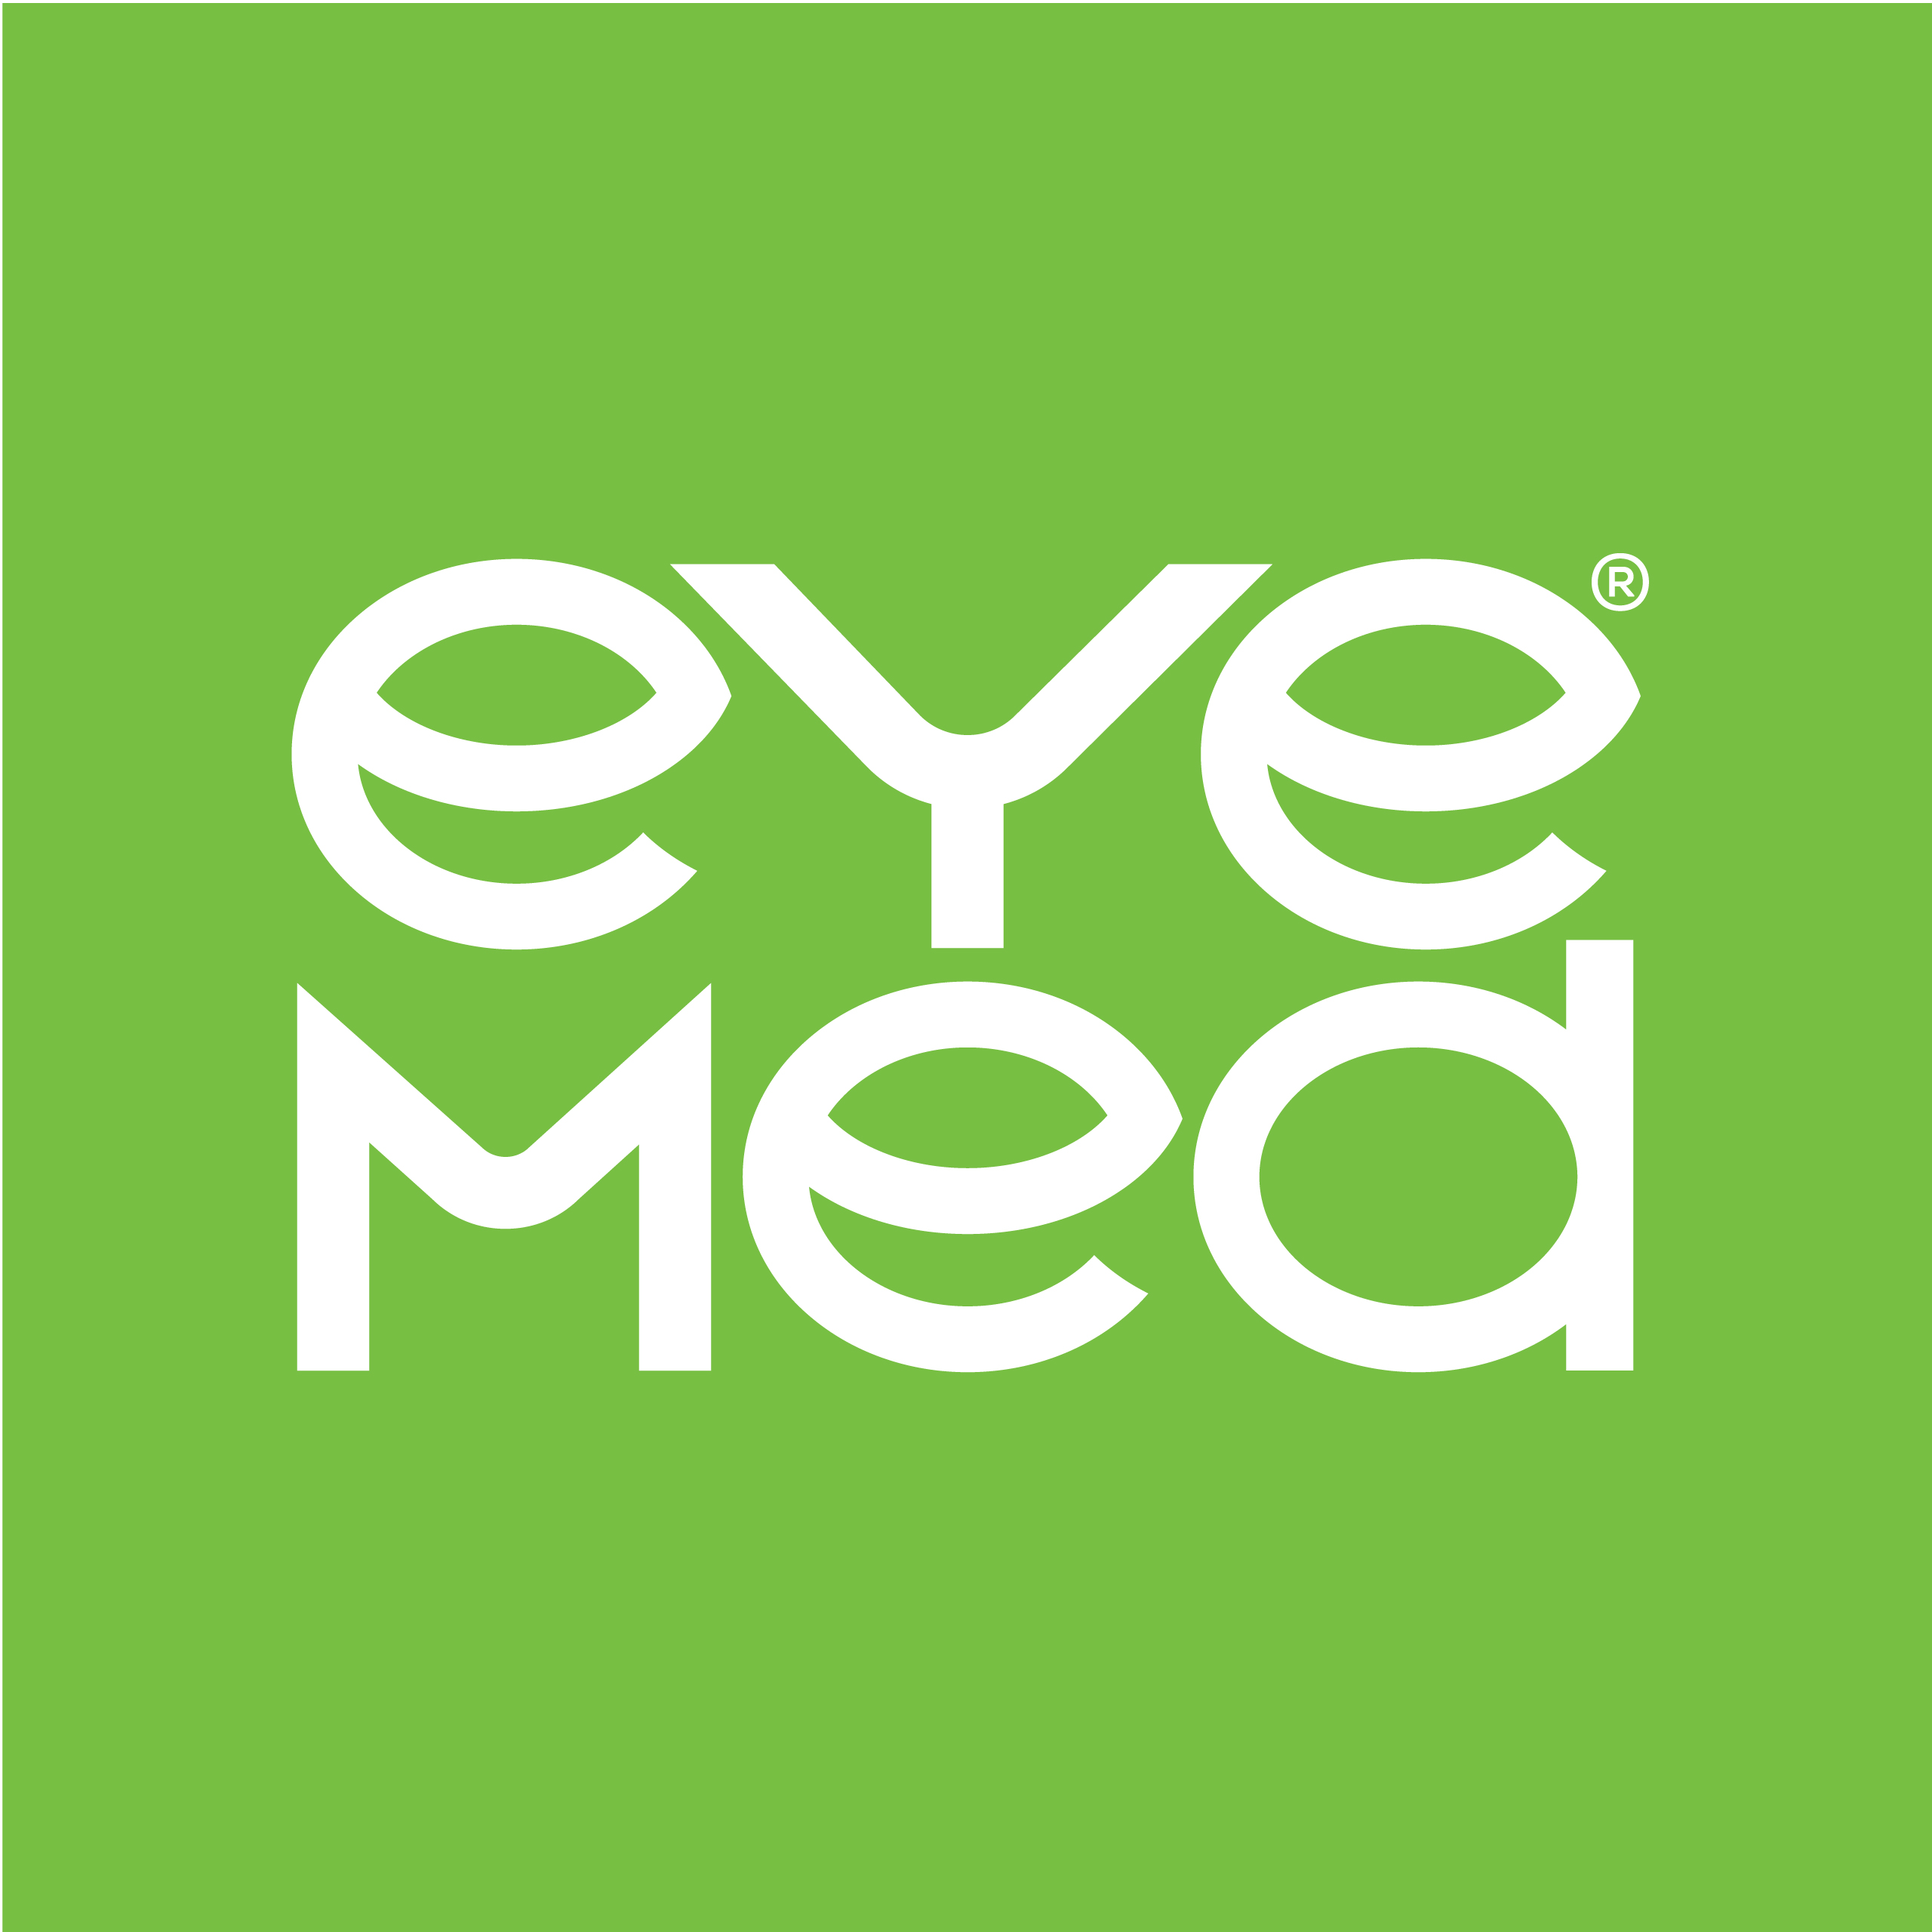 EyeMed Edge Insurance Group